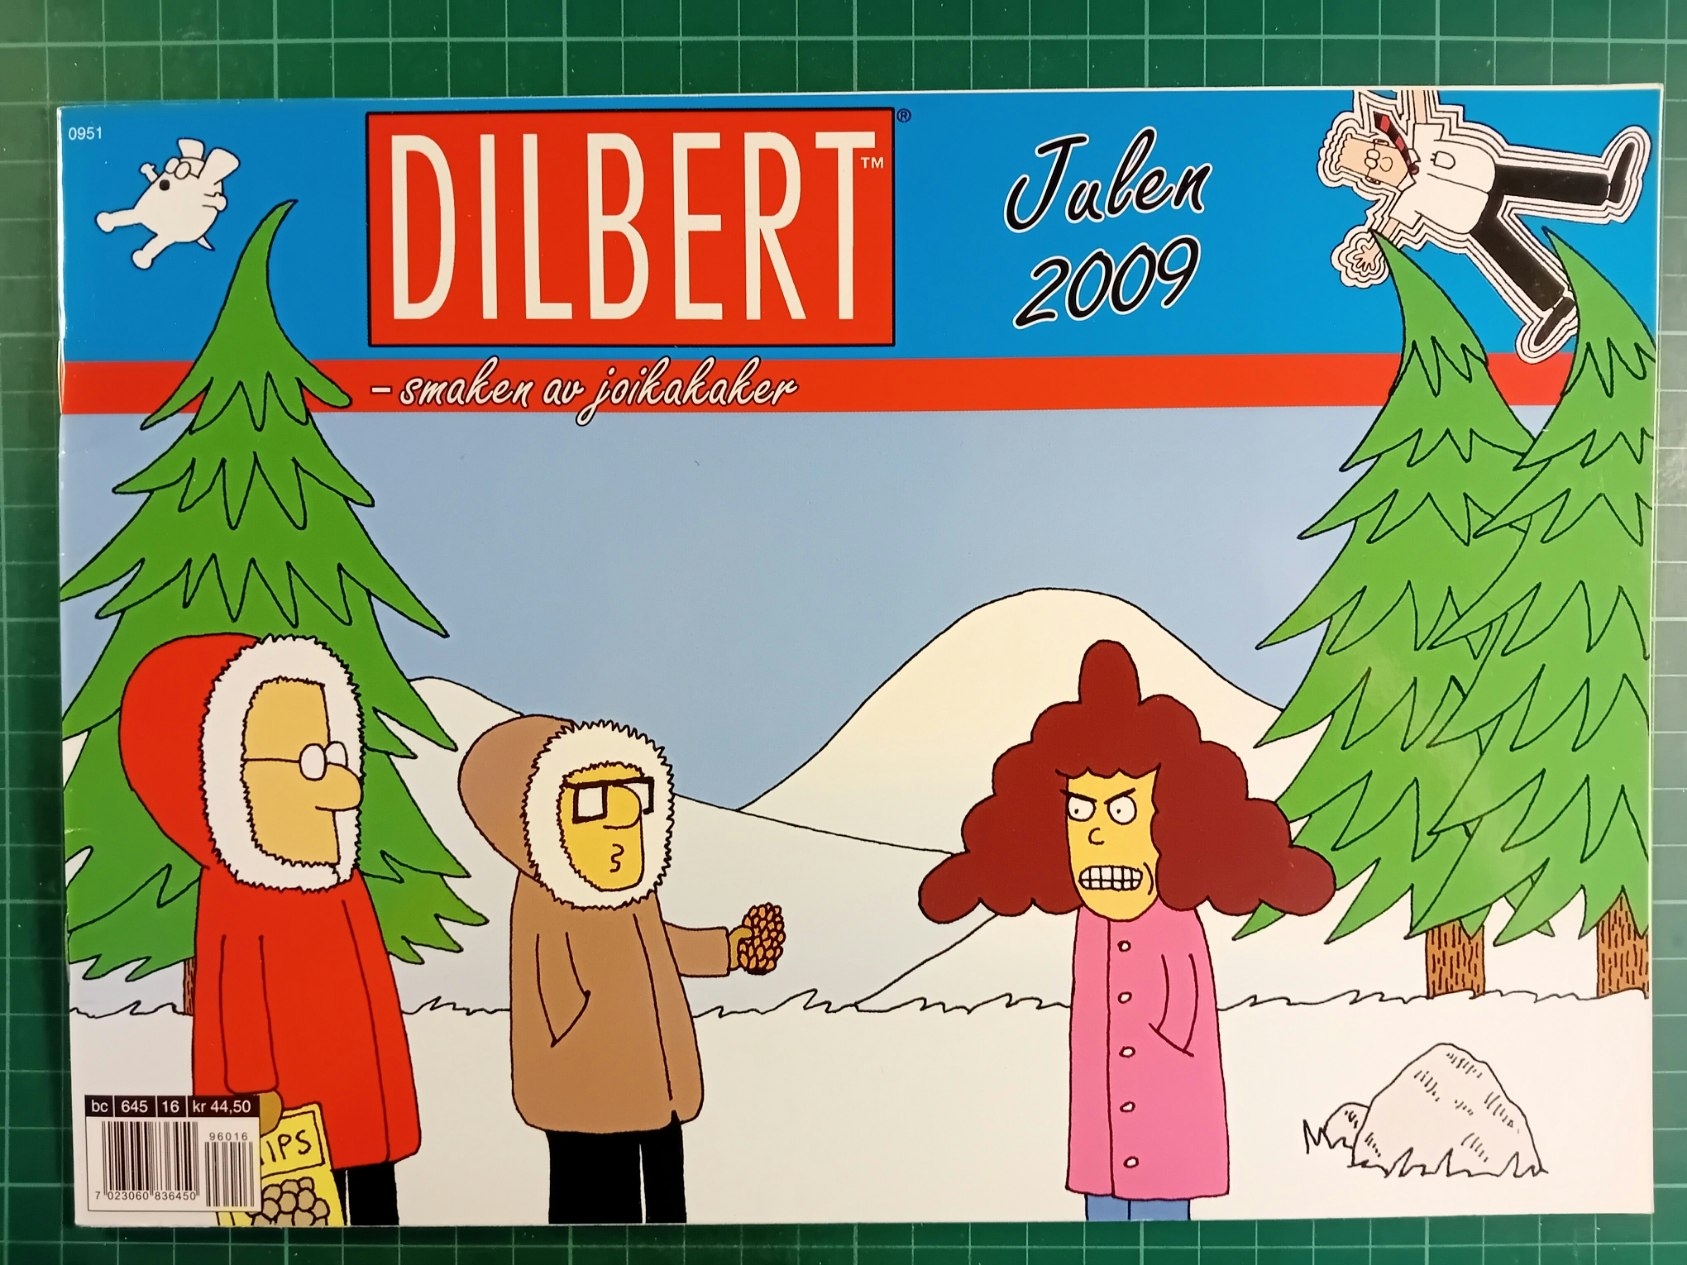 Dilbert Julen 2009